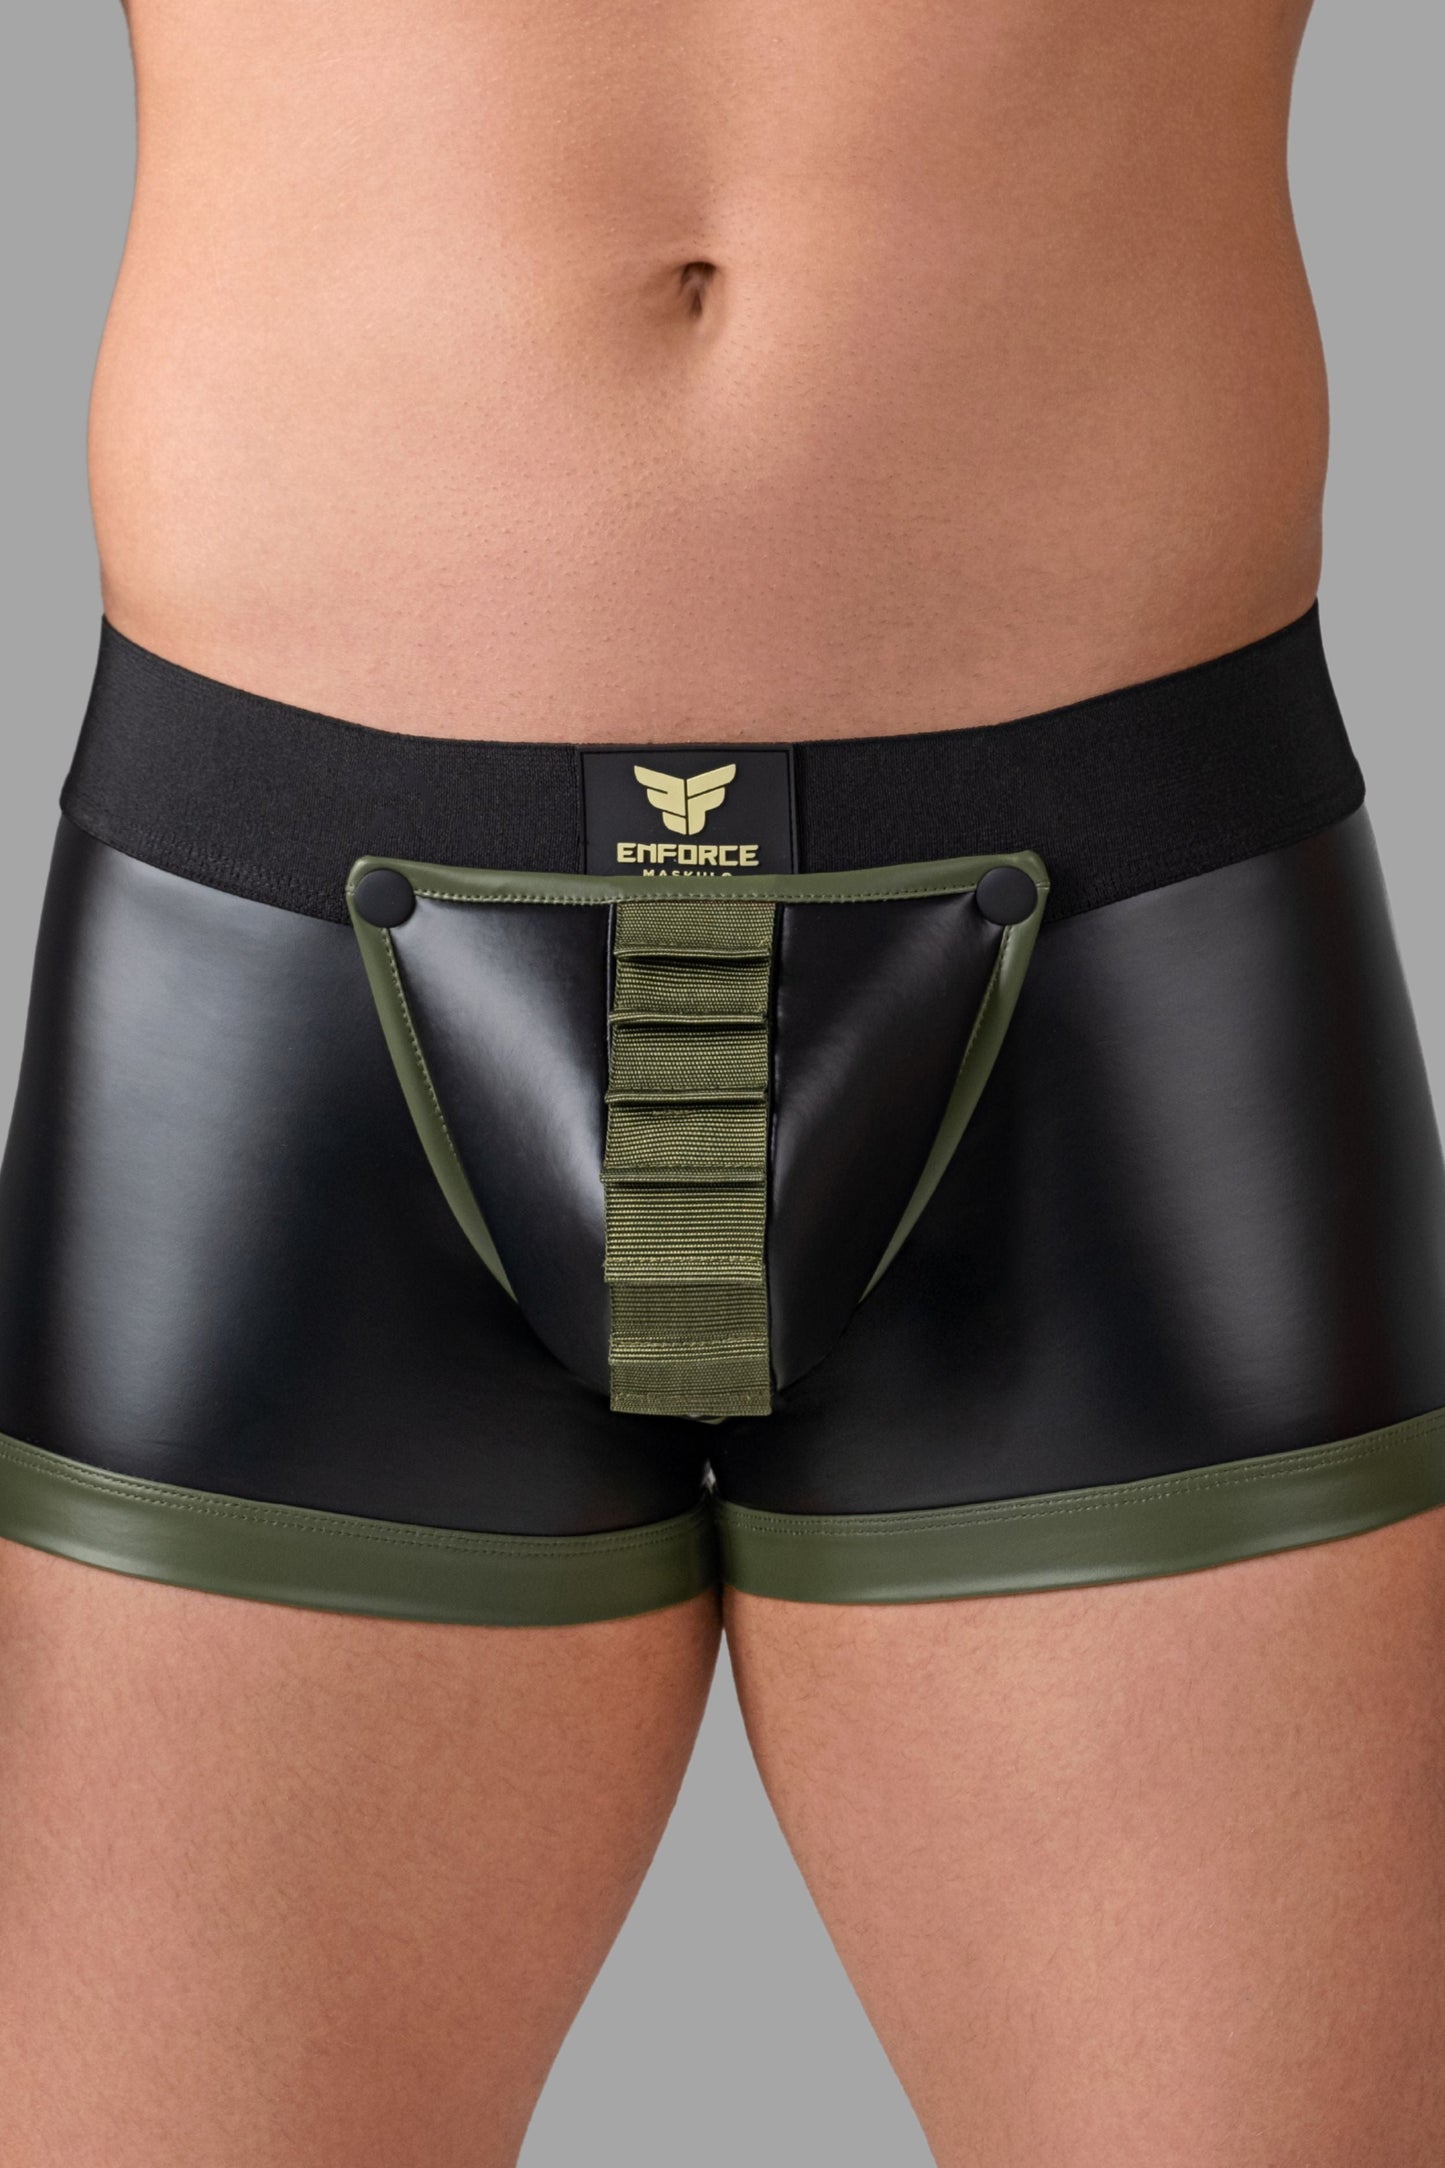 Codpiece-Shorts mit Reißverschluss hinten und Gürtel. Schwarz